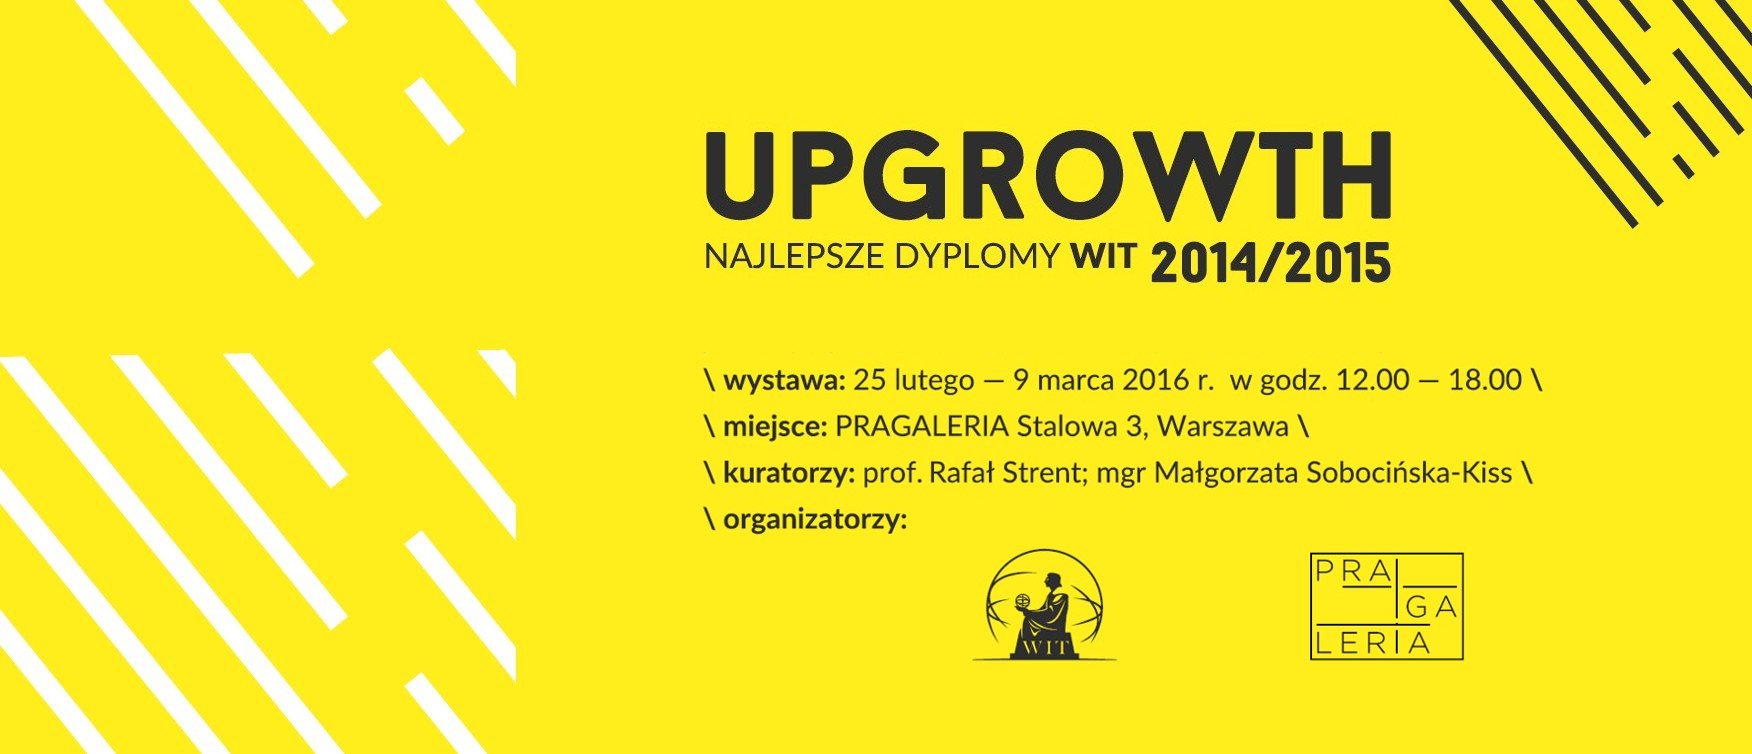 Wystawa UPGROWTH 2014/2015 najlepsze dyplomy WIT